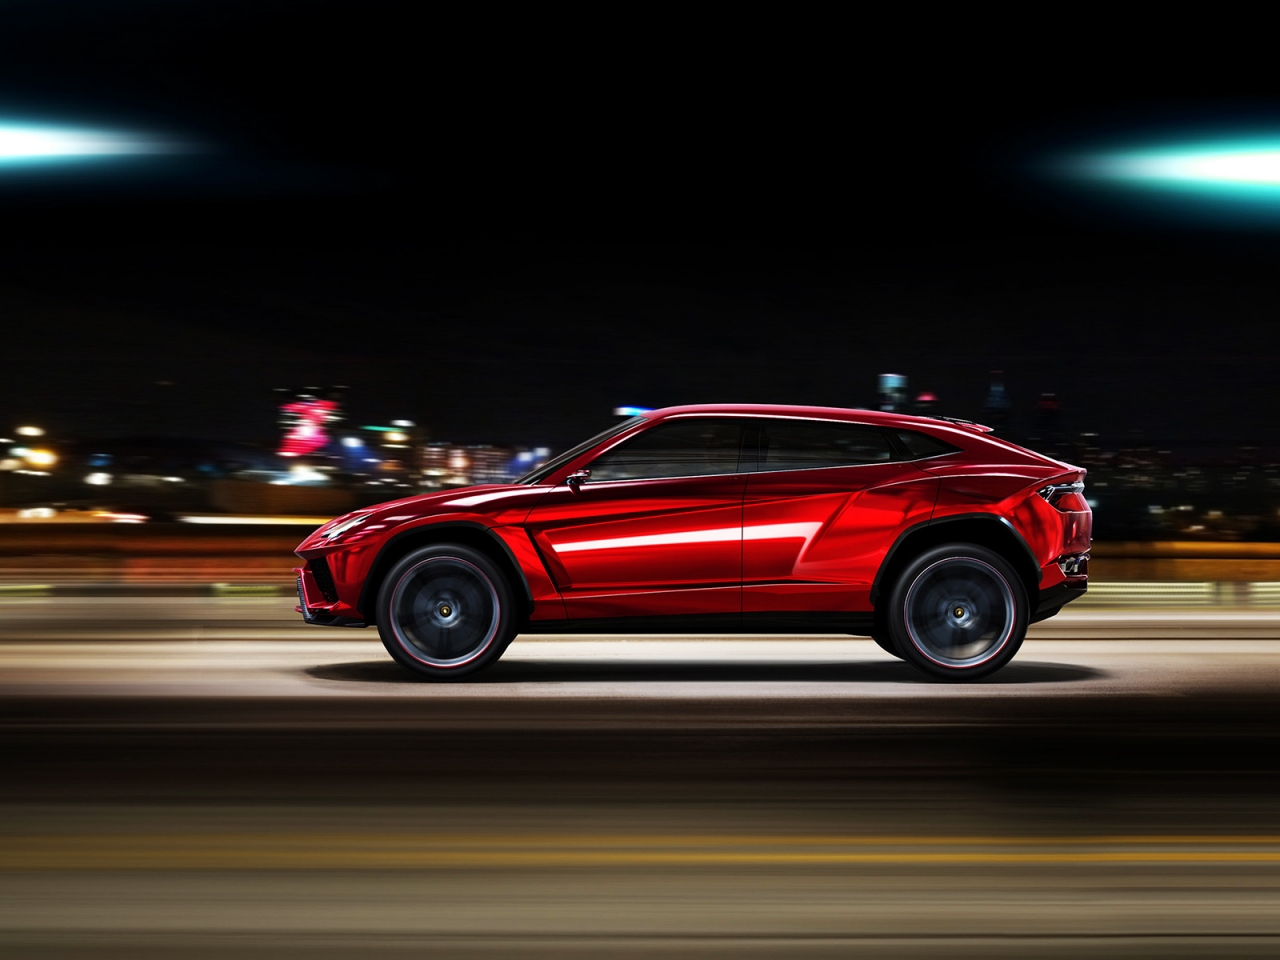 Lamborghini Urus Speed for 1280 x 960 resolution